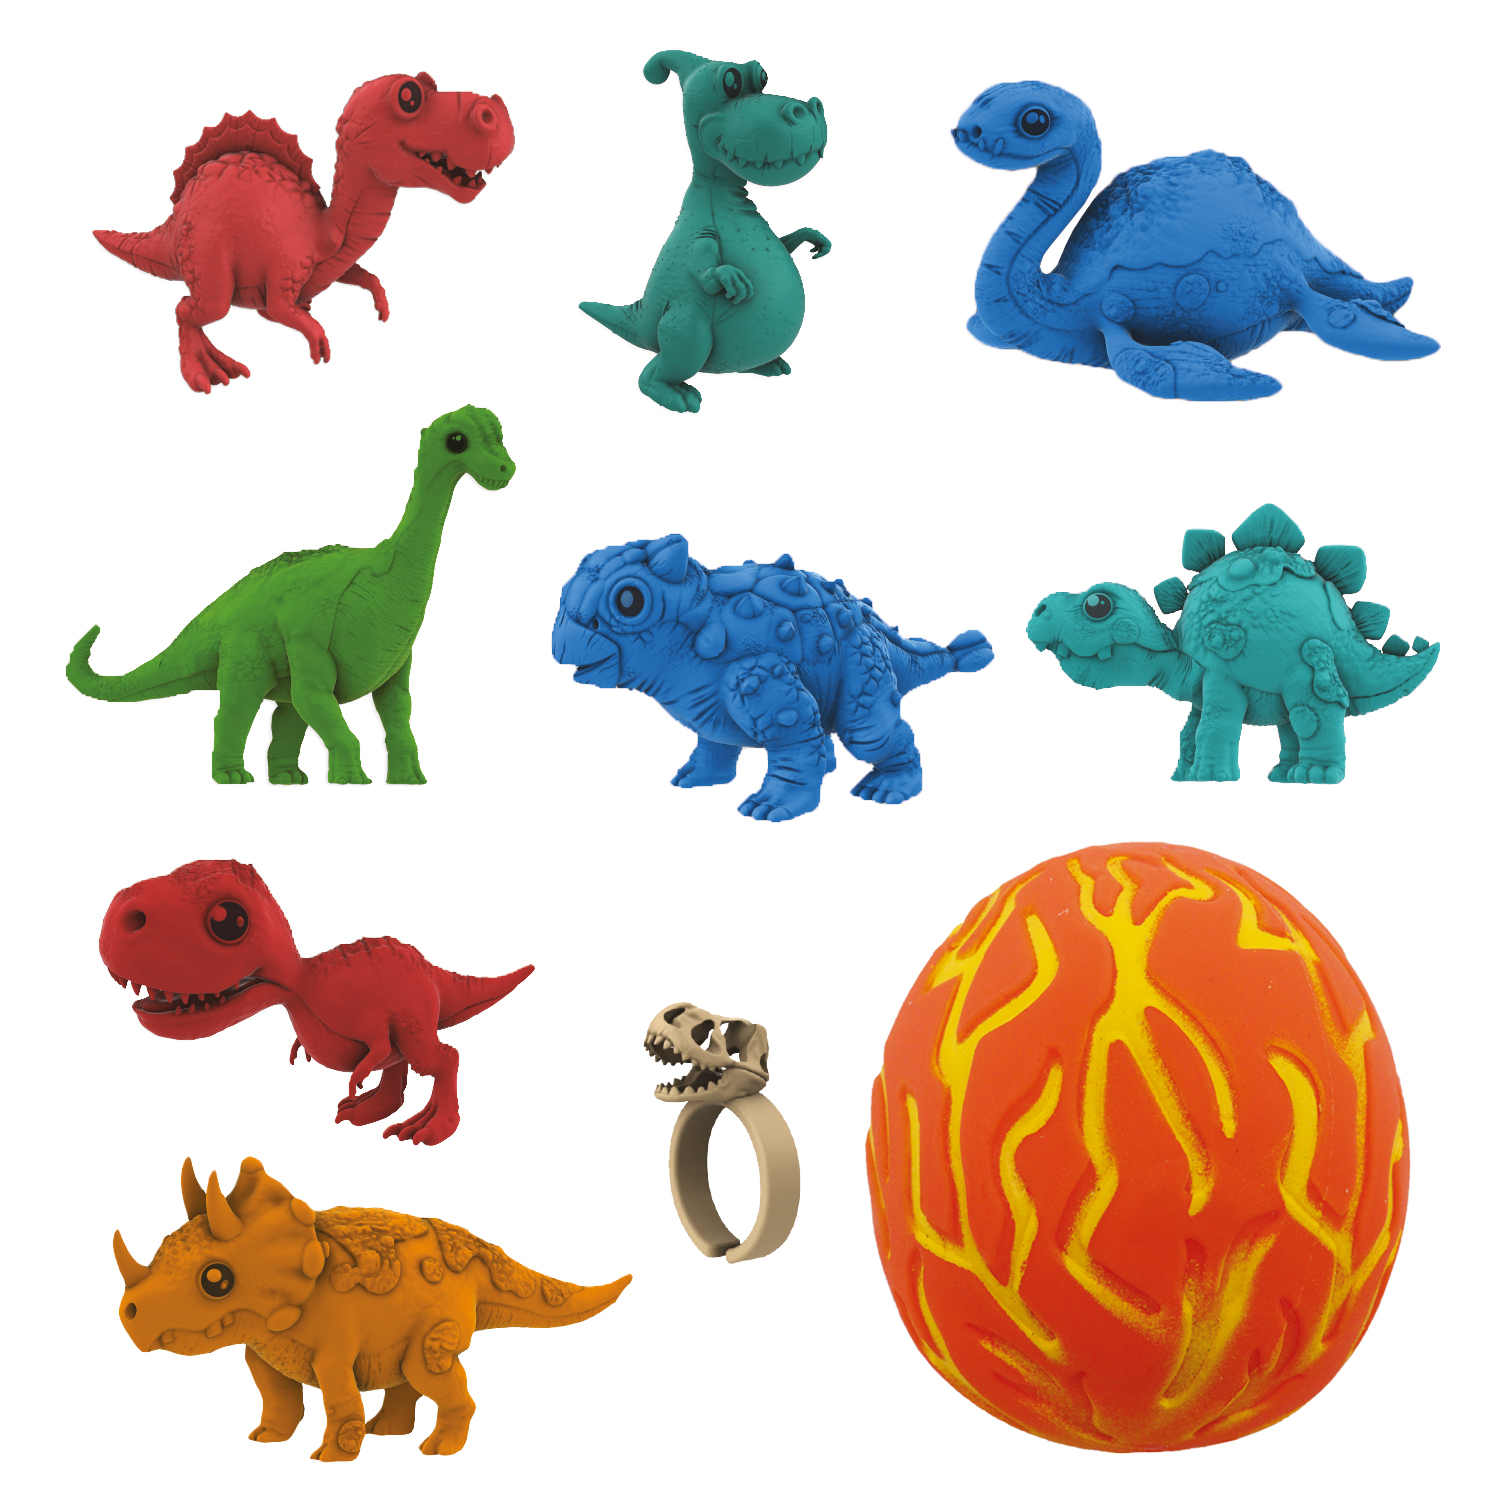 Коллекционная фигурка-сюрприз динозавра в яйце-сквише Lava Egg, 8 героев, Crazy Dino, CD02 набор парфюма 30 мл crazy dream box 3 шт